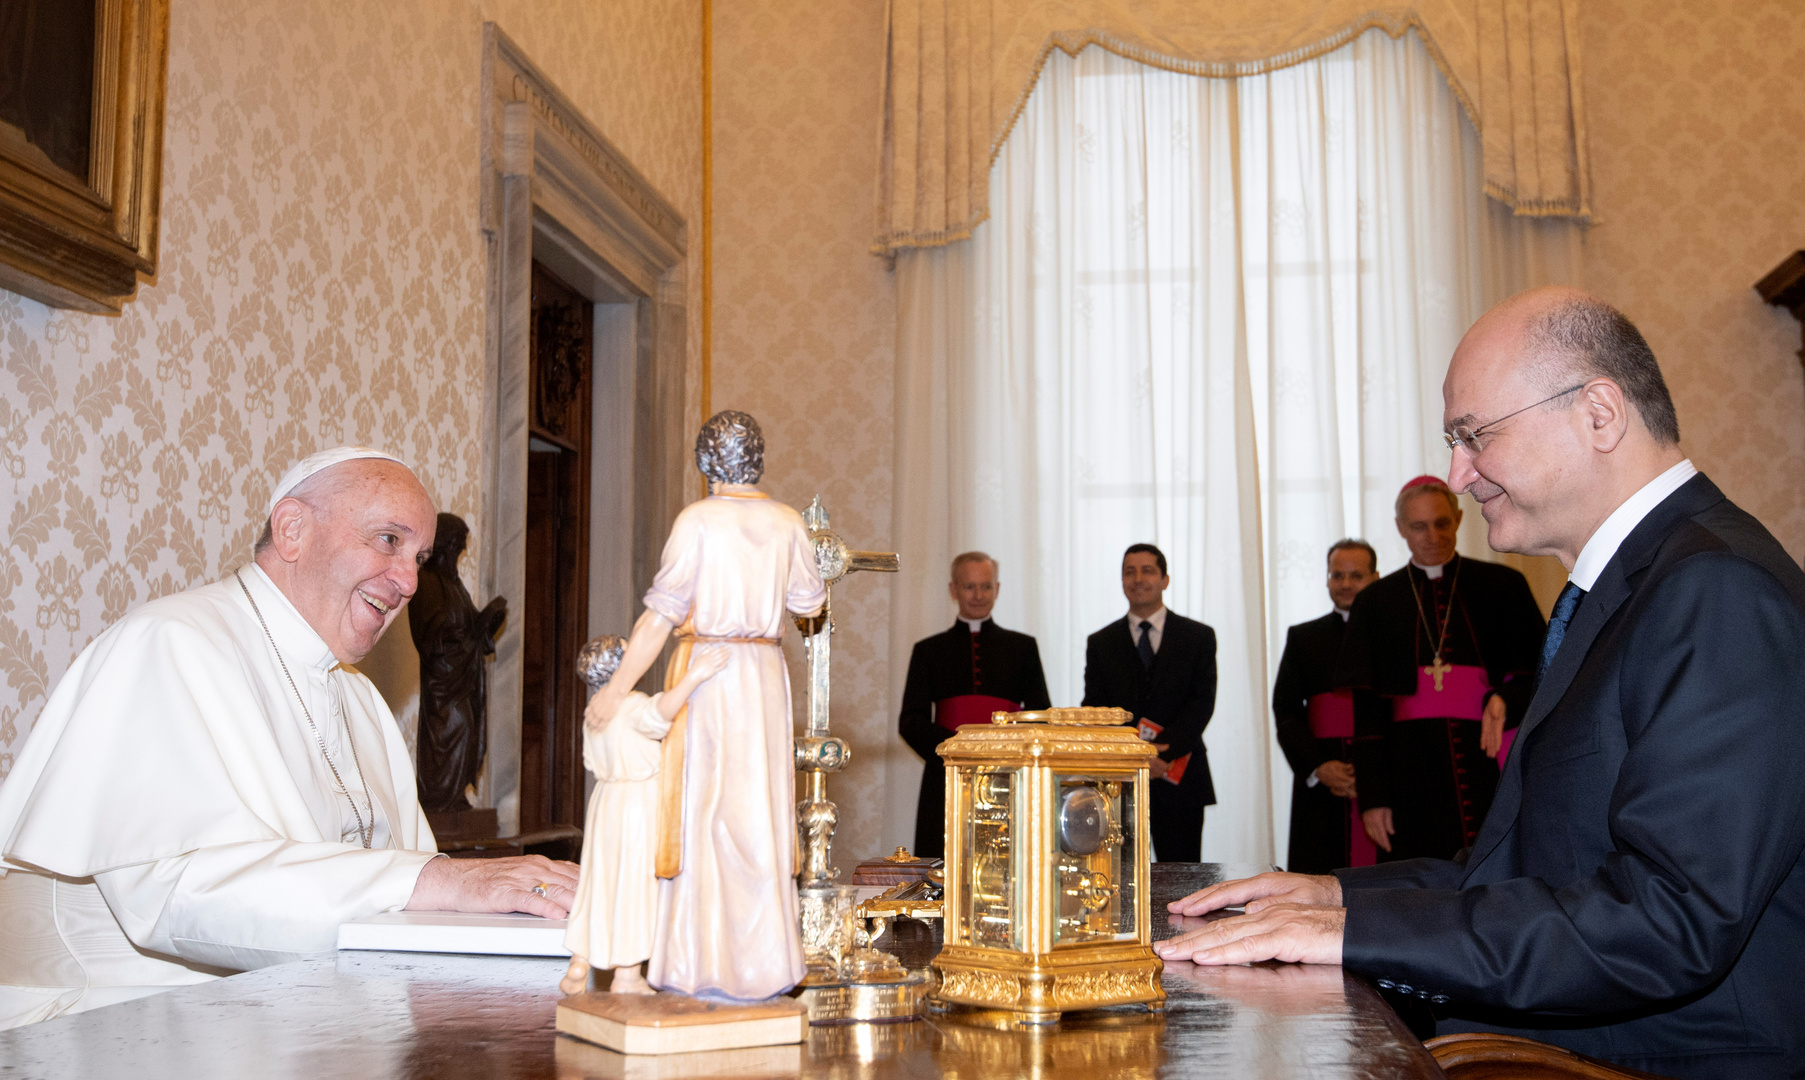 وفد من الفاتيكان يصل إلى النجف تمهيدا لزيارة البابا